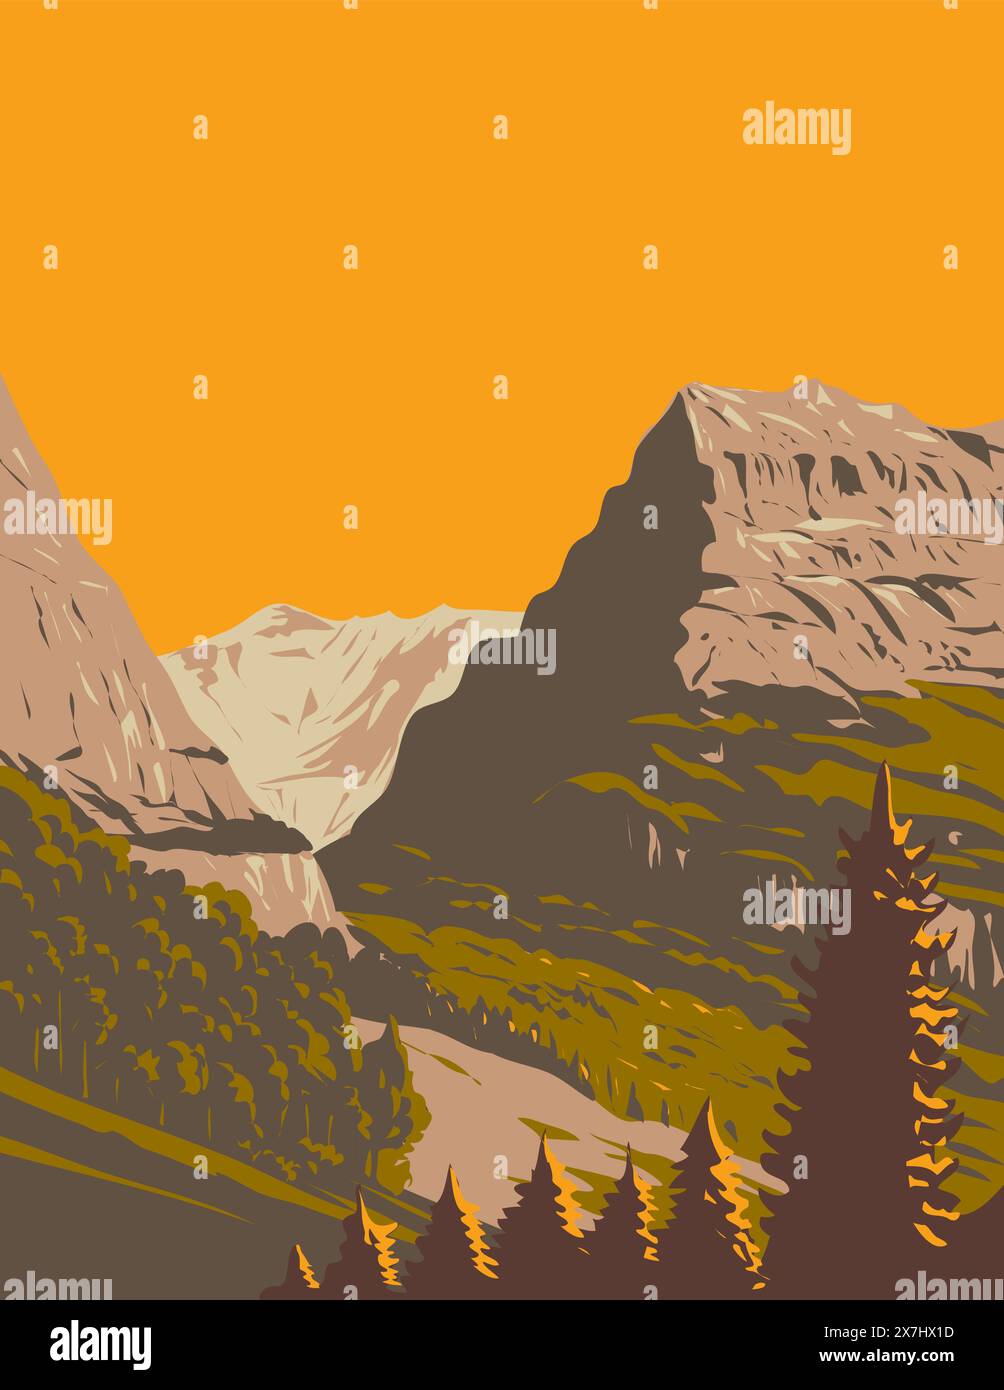 WPA affiche art de la vallée de Grindelwald avec Mattenberg en arrière-plan situé en Suisse fait dans des travaux d'administration de projet ou Art Déco styl Illustration de Vecteur